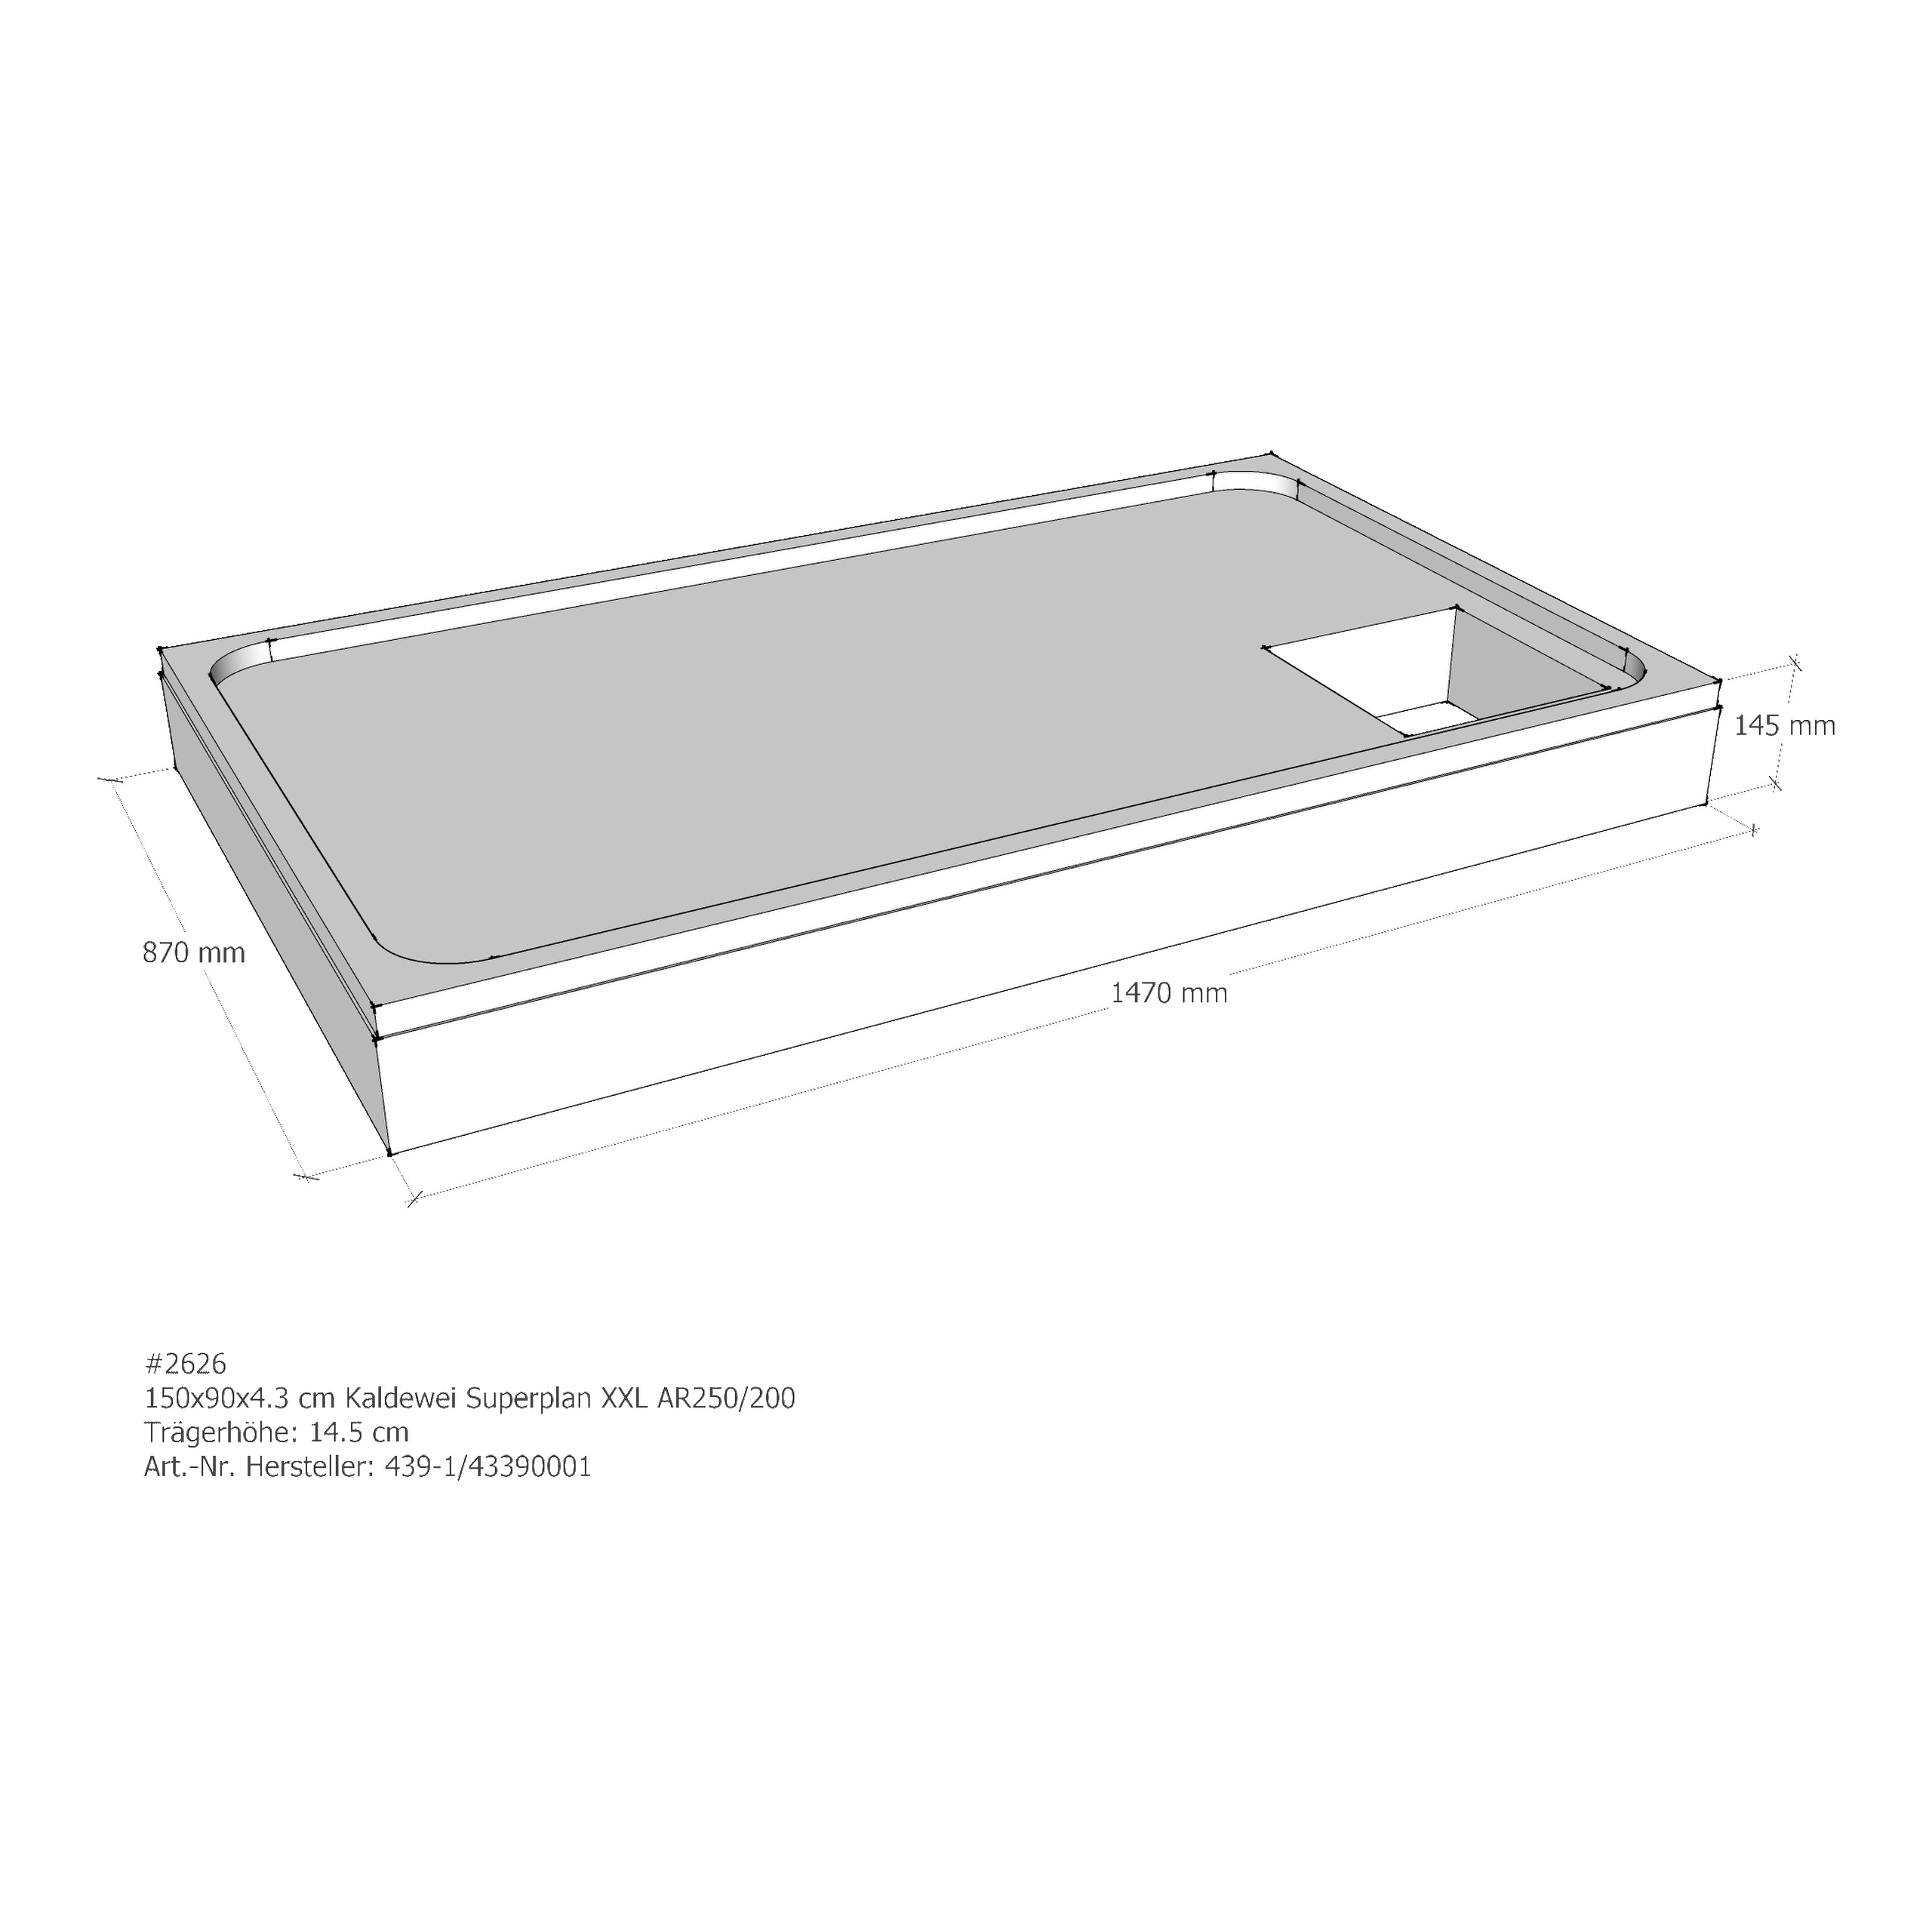 Duschwannenträger für Kaldewei Superplan XXL 150 × 90 × 4,3 cm